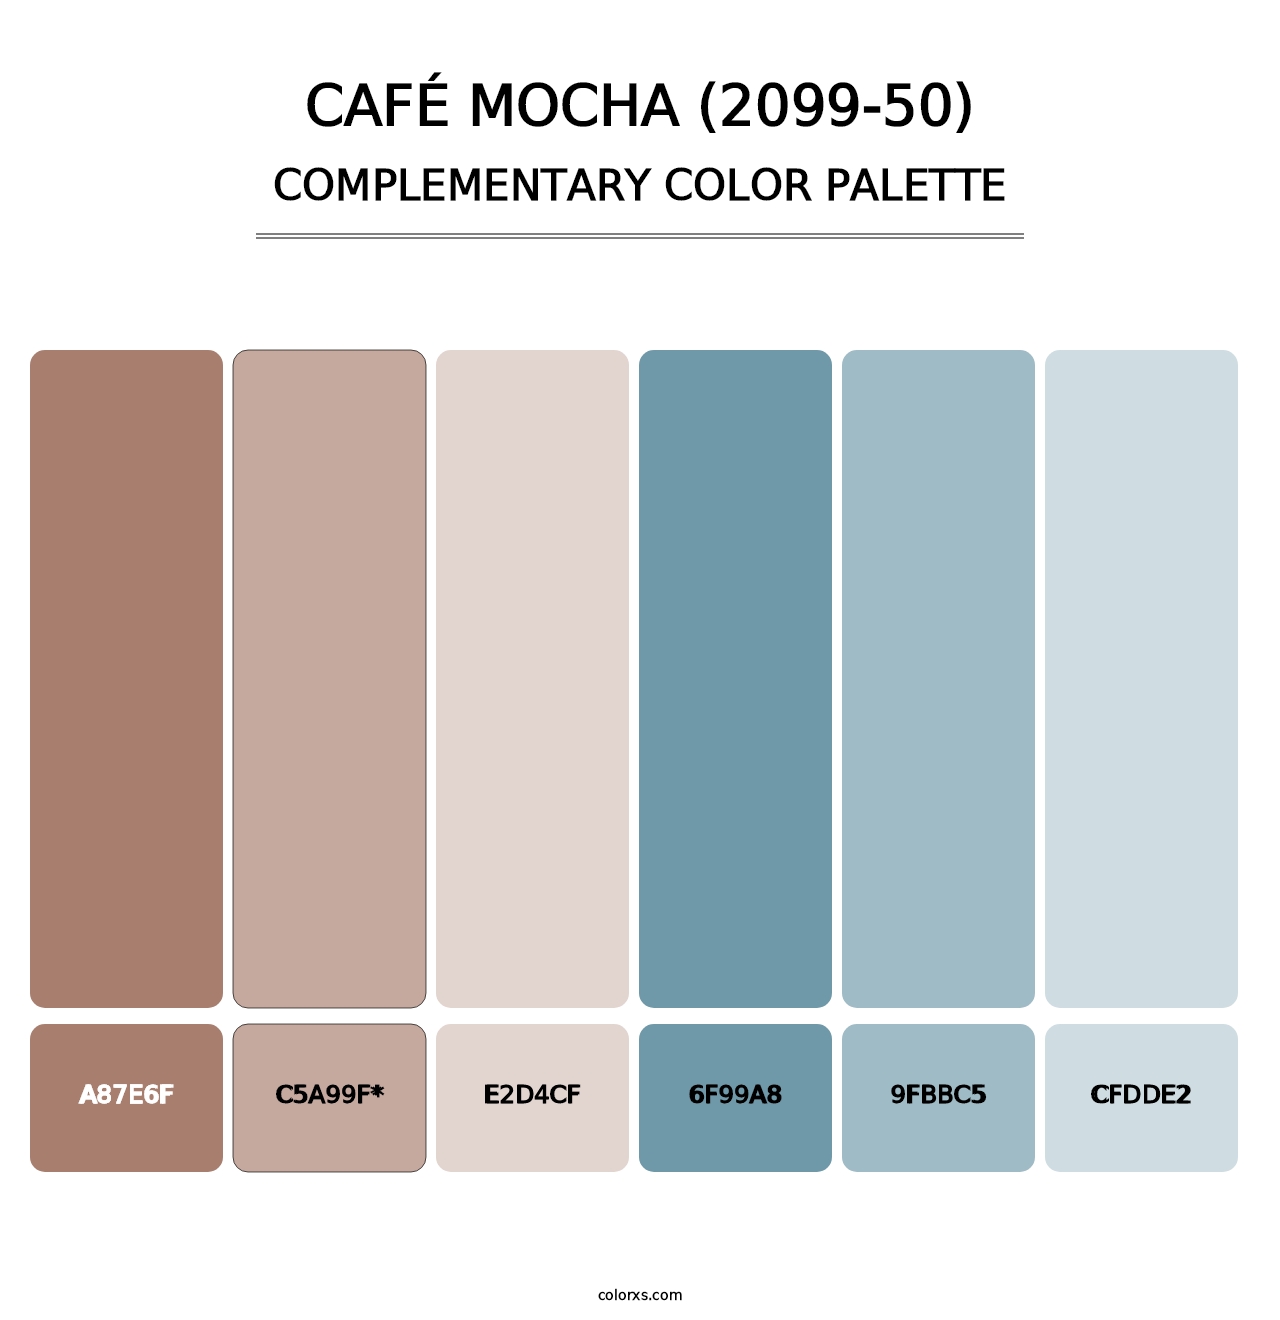 Café Mocha (2099-50) - Complementary Color Palette